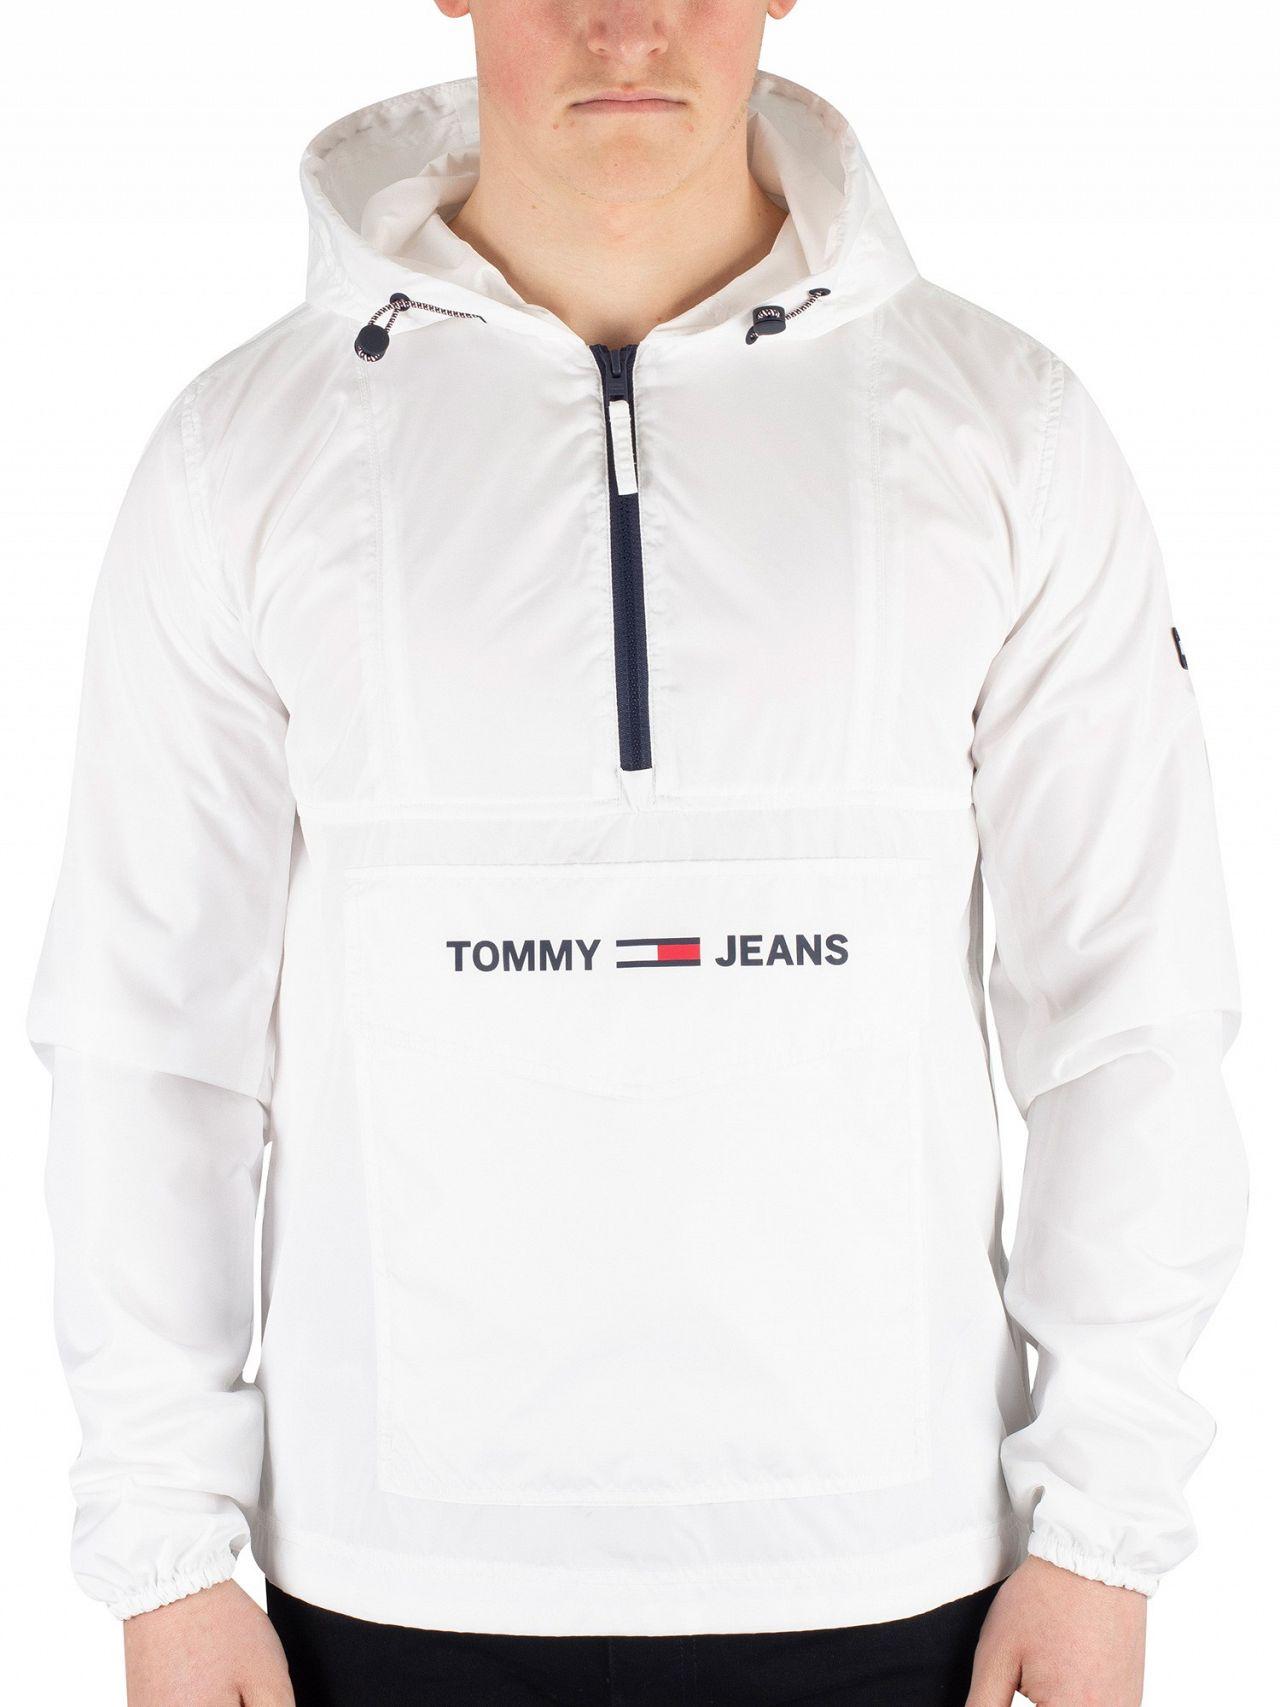 Tommy Hilfiger Popover Jacket Hot Sale, 57% OFF | www.pegasusaerogroup.com